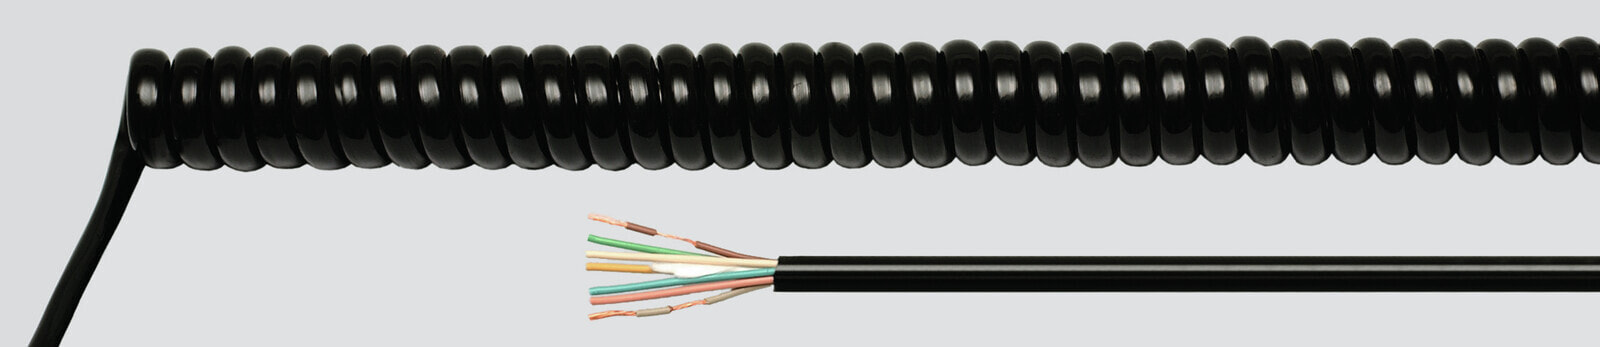 Helukabel 86484 - Low voltage cable - Black - Cooper - 2.5 mm² - 1036.8 kg/km - -25 - 70 °C